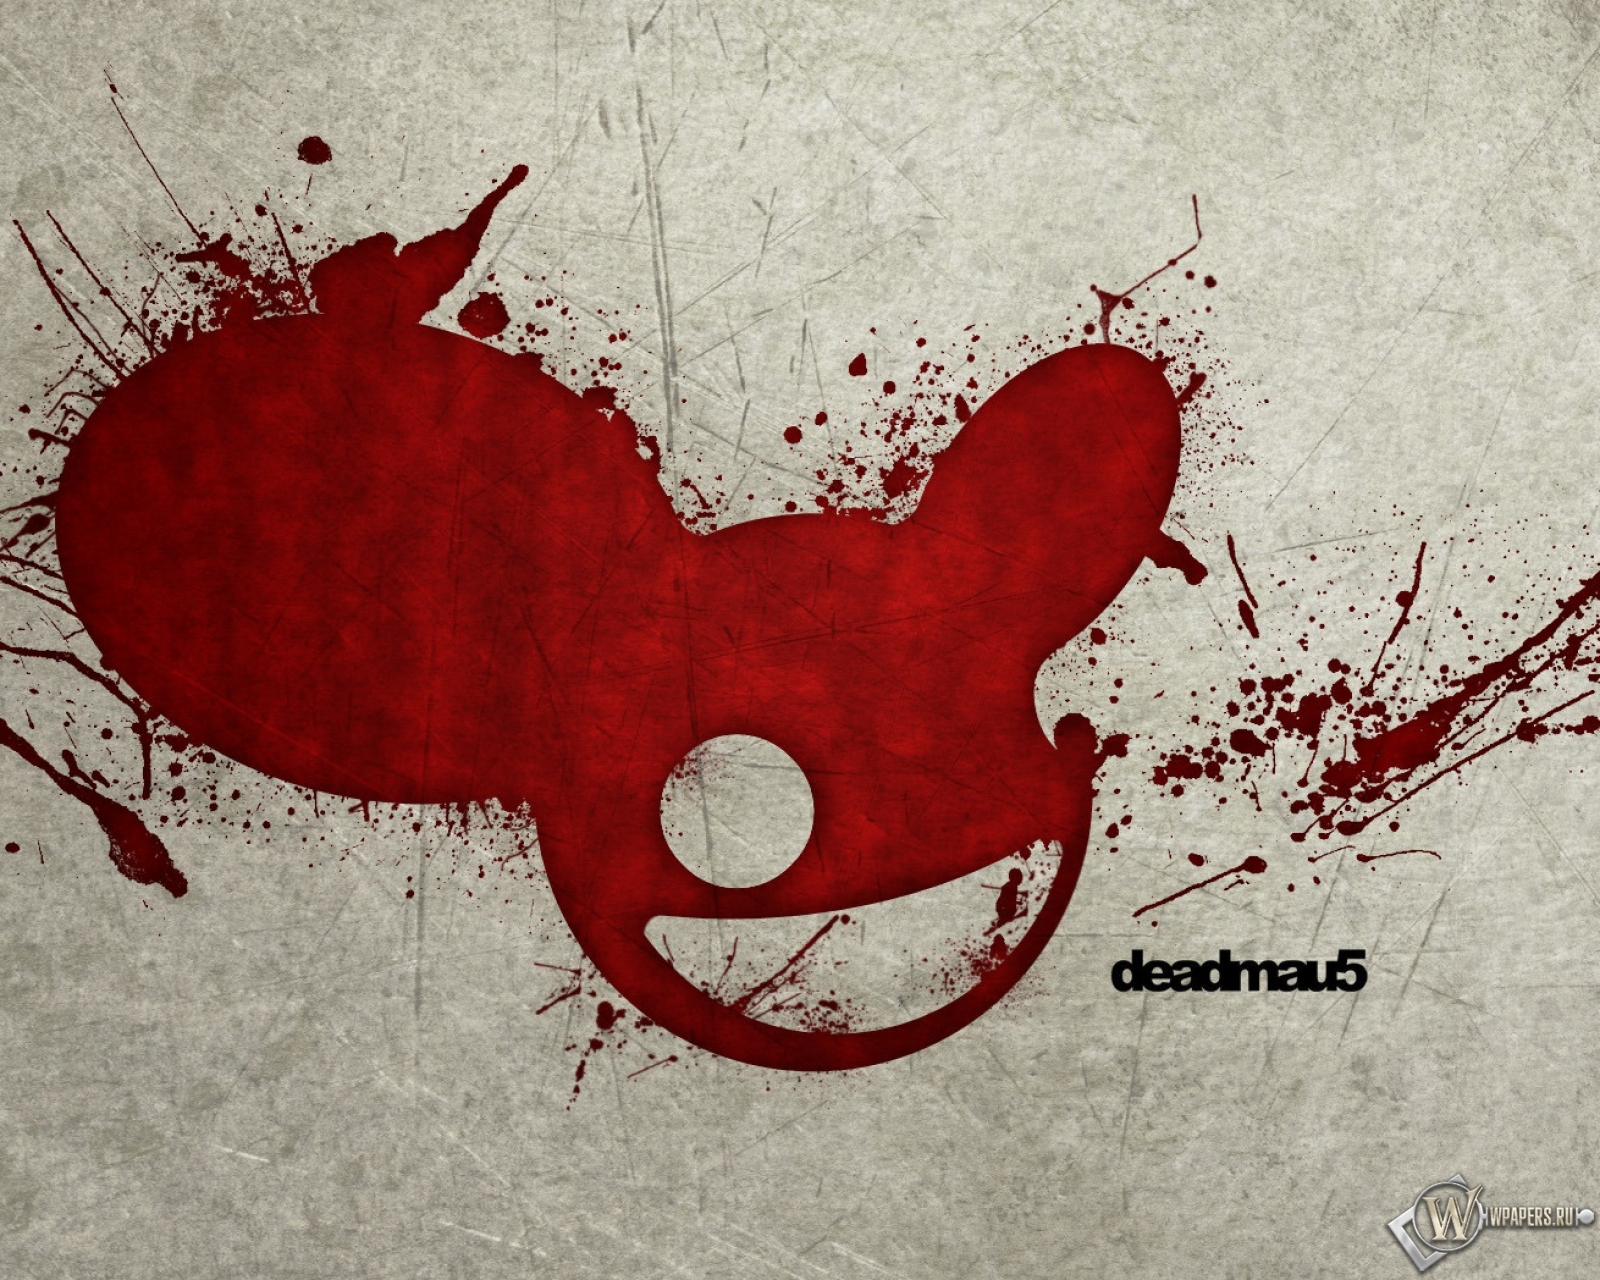 Deadmau5 1600x1280